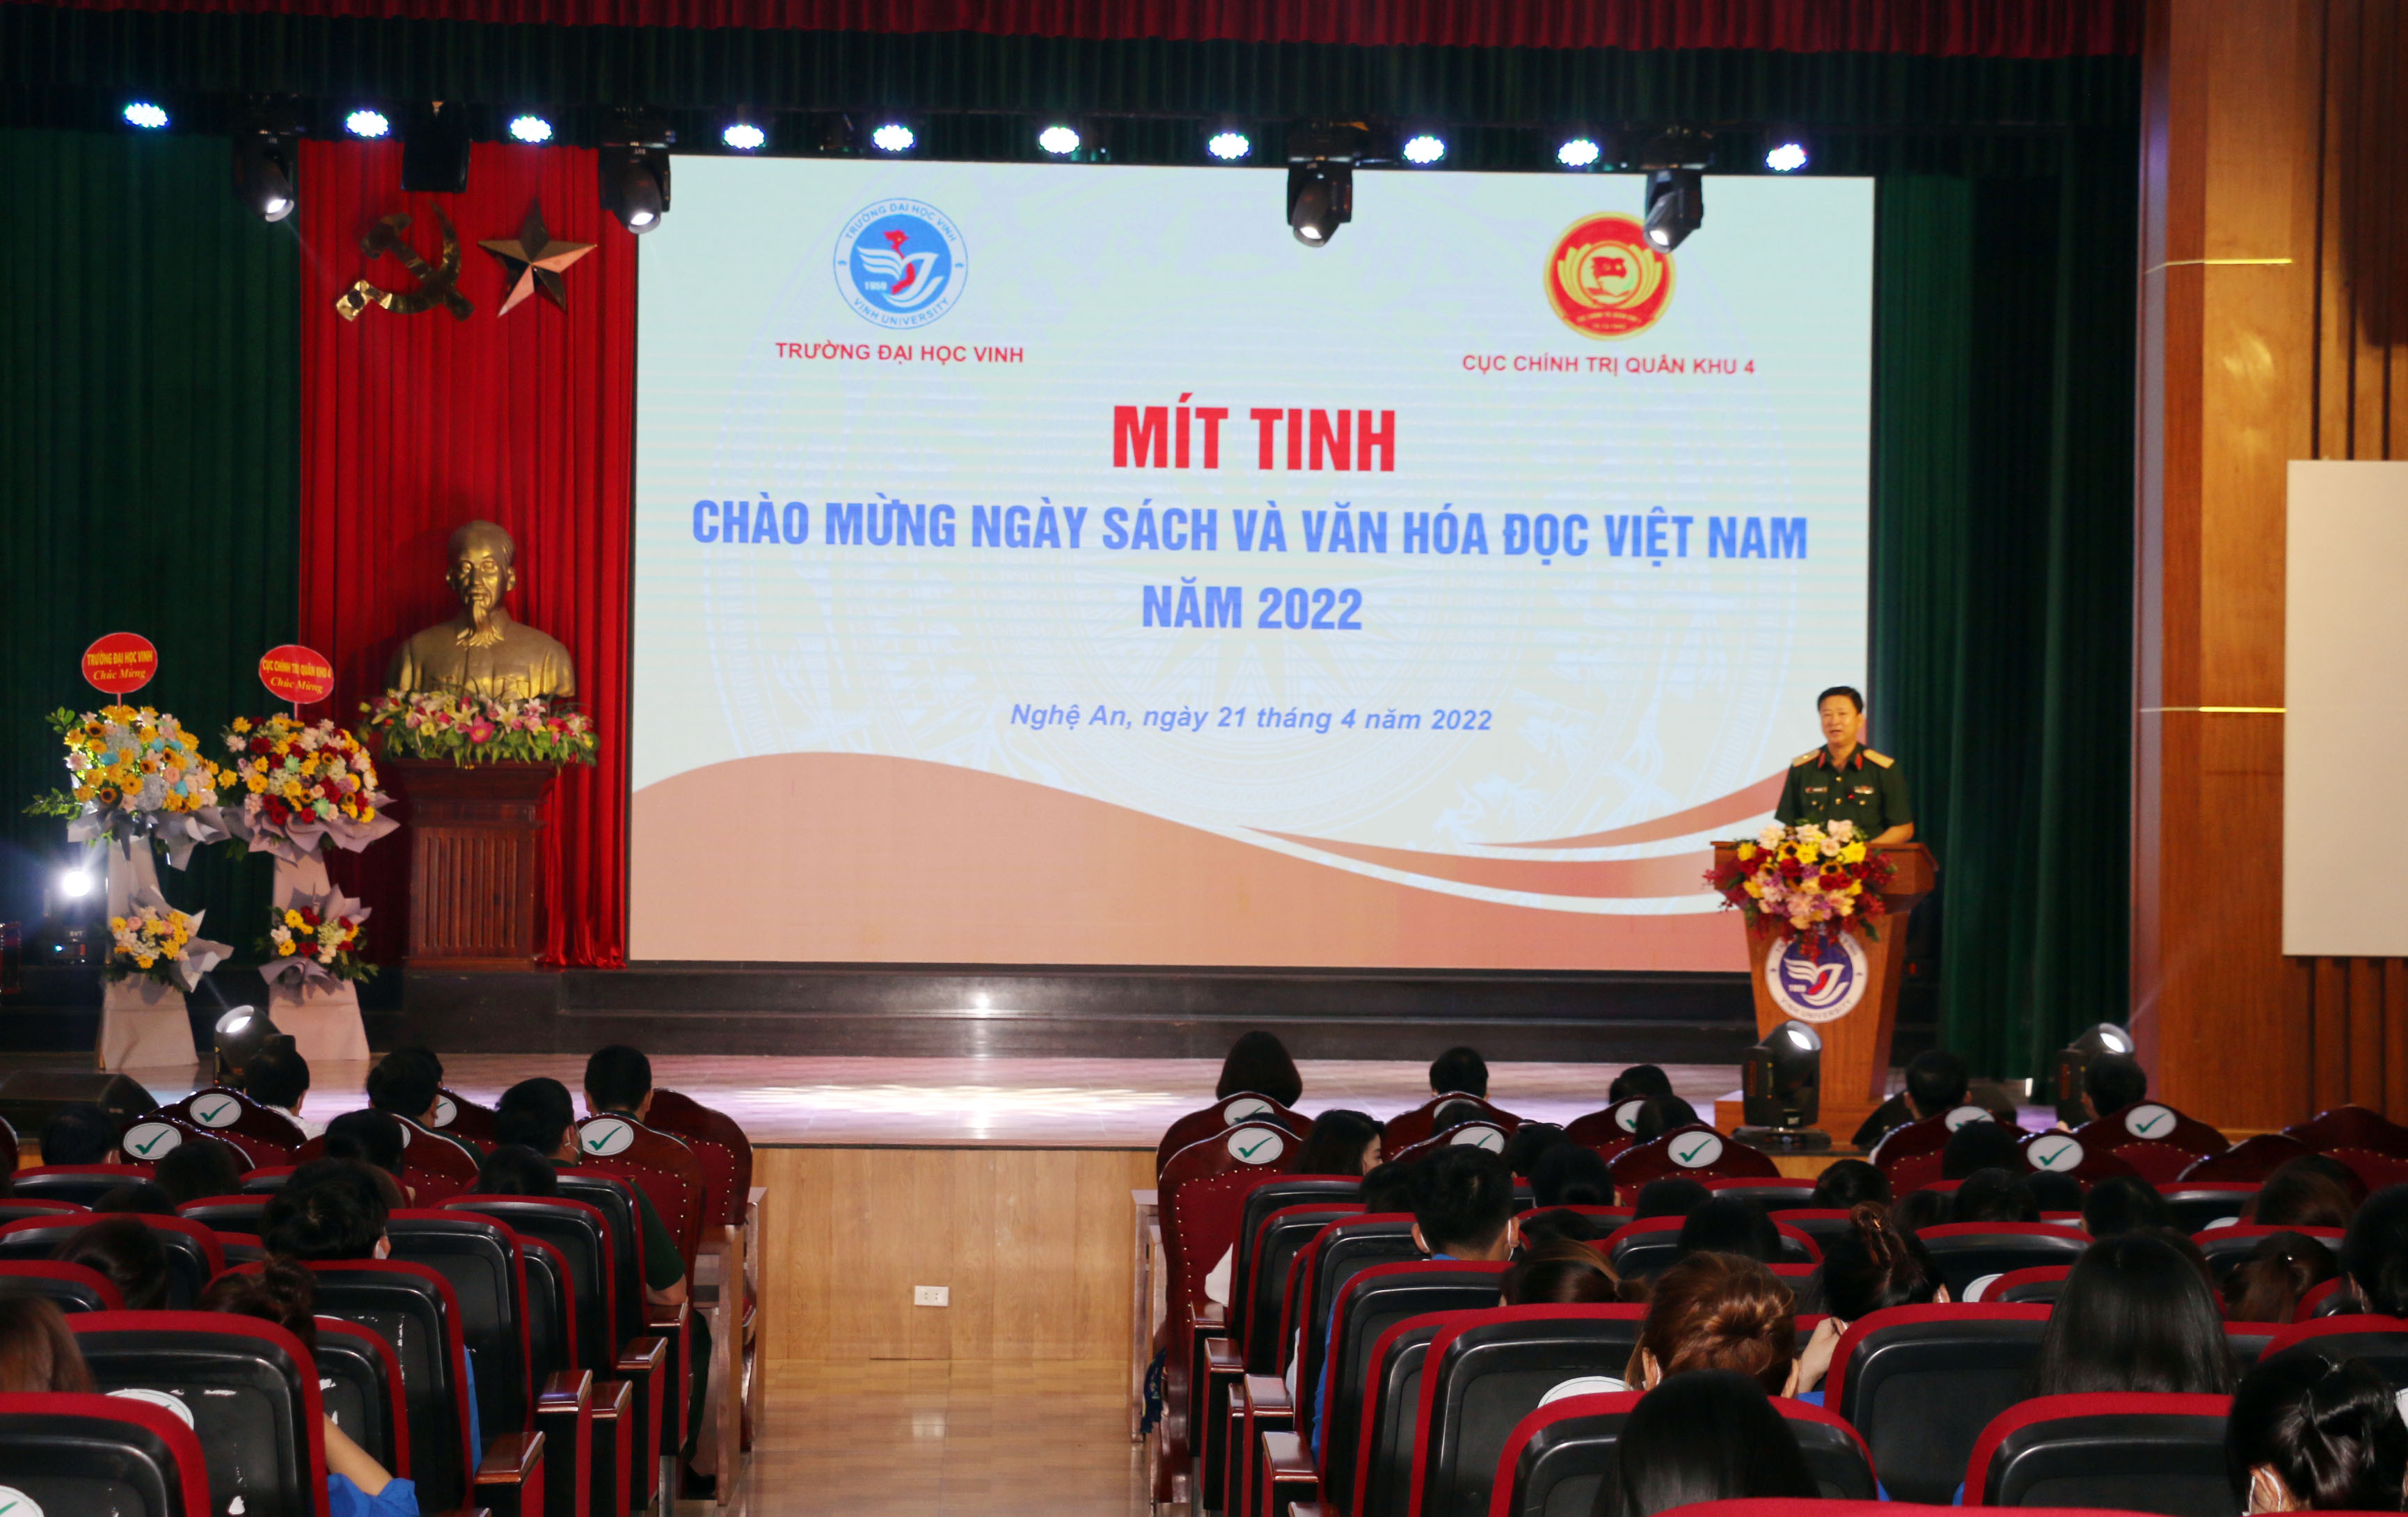 Thiếu tướng Trần Minh Thanh - Chủ nhiệm Chính trị Quân khu 4 phát biểu tại lễ mít tinh. Ảnh: MH